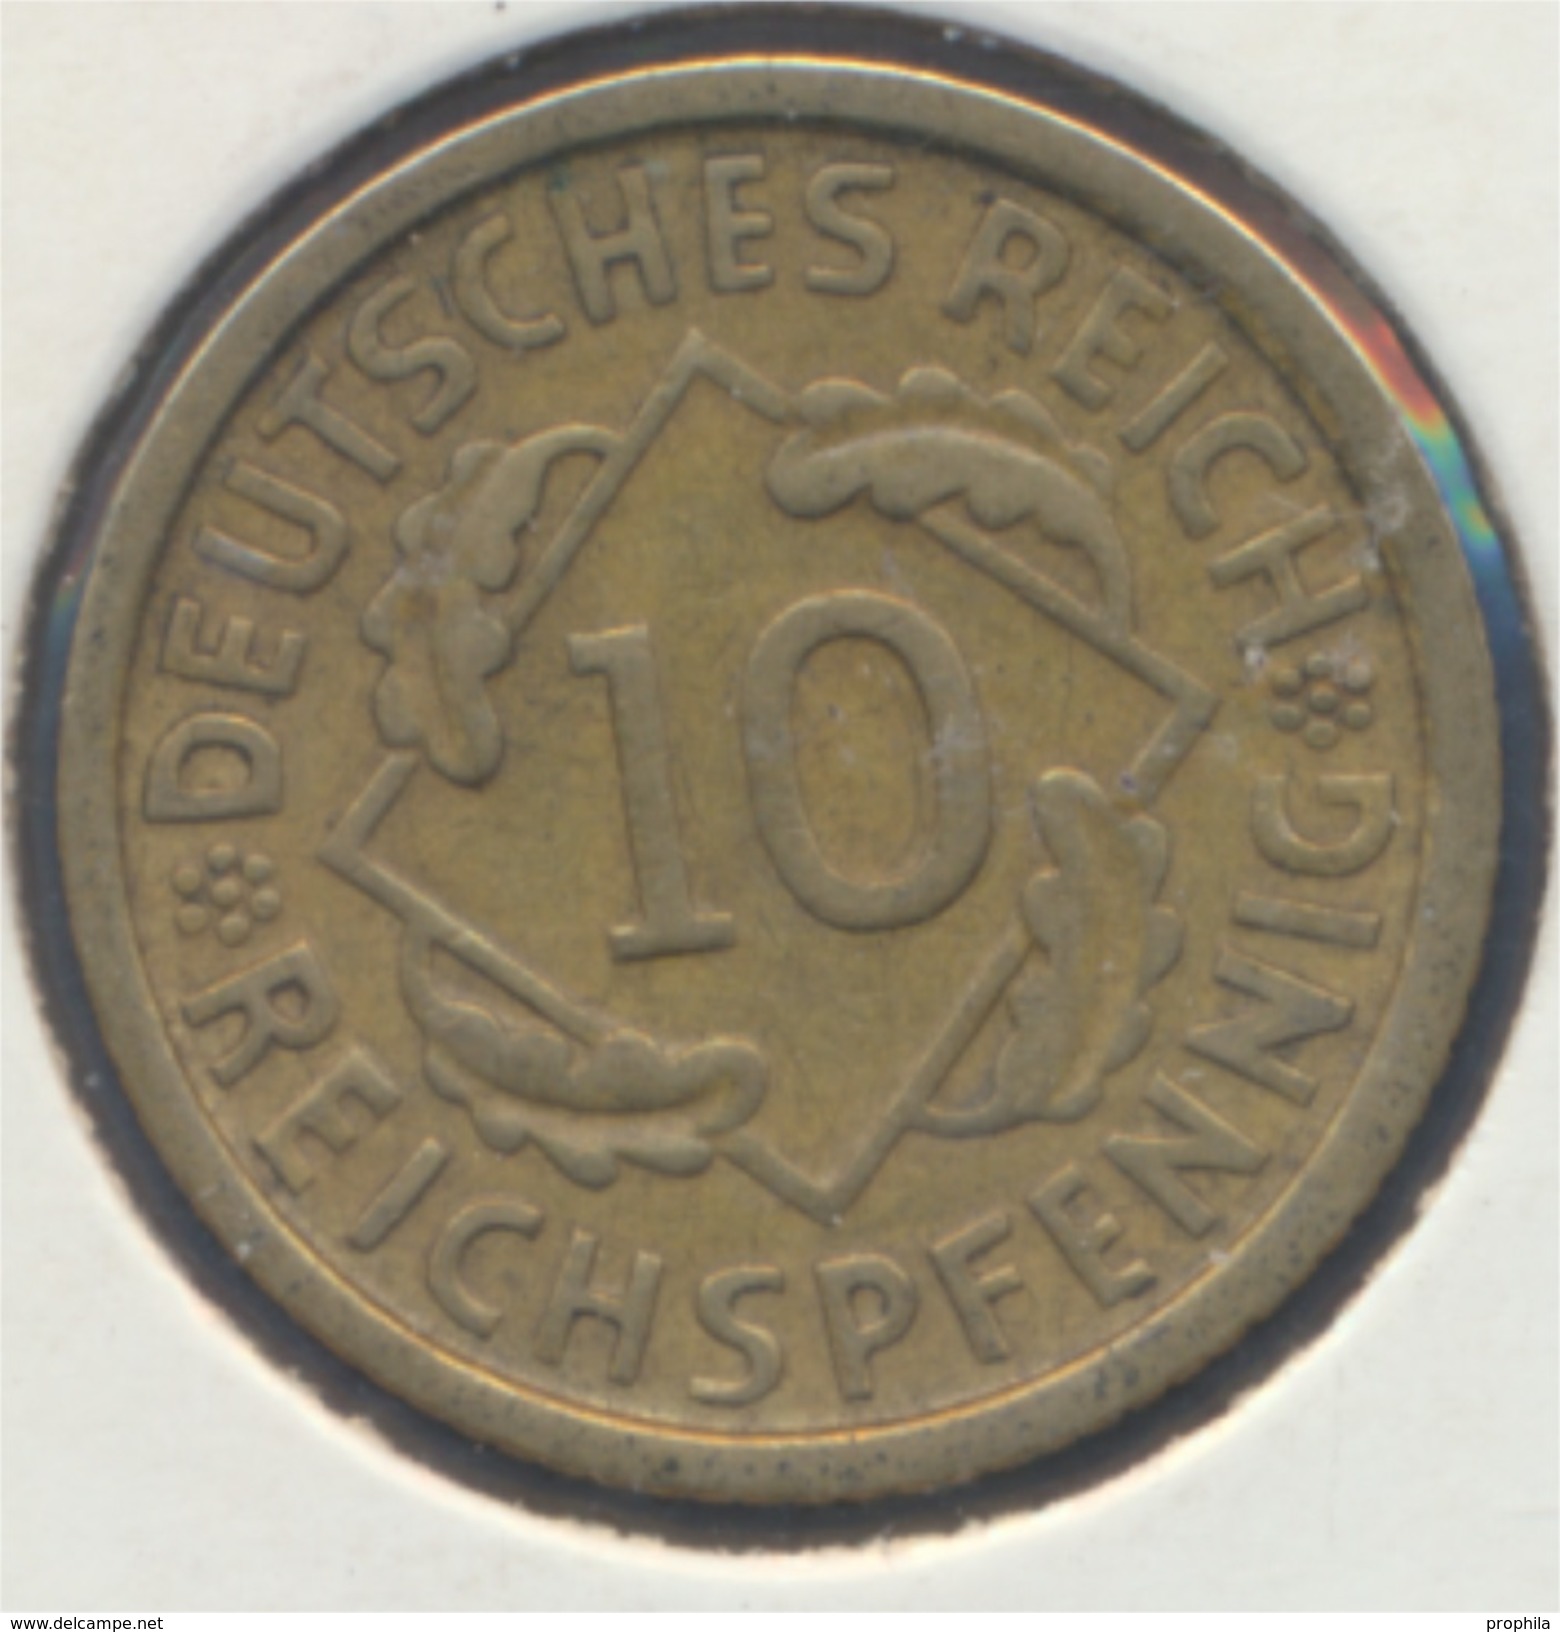 Deutsches Reich Jägernr: 317 1932 D Vorzüglich Aluminium-Bronze 1932 10 Reichspfennig Ähren (7869009 - 10 Rentenpfennig & 10 Reichspfennig